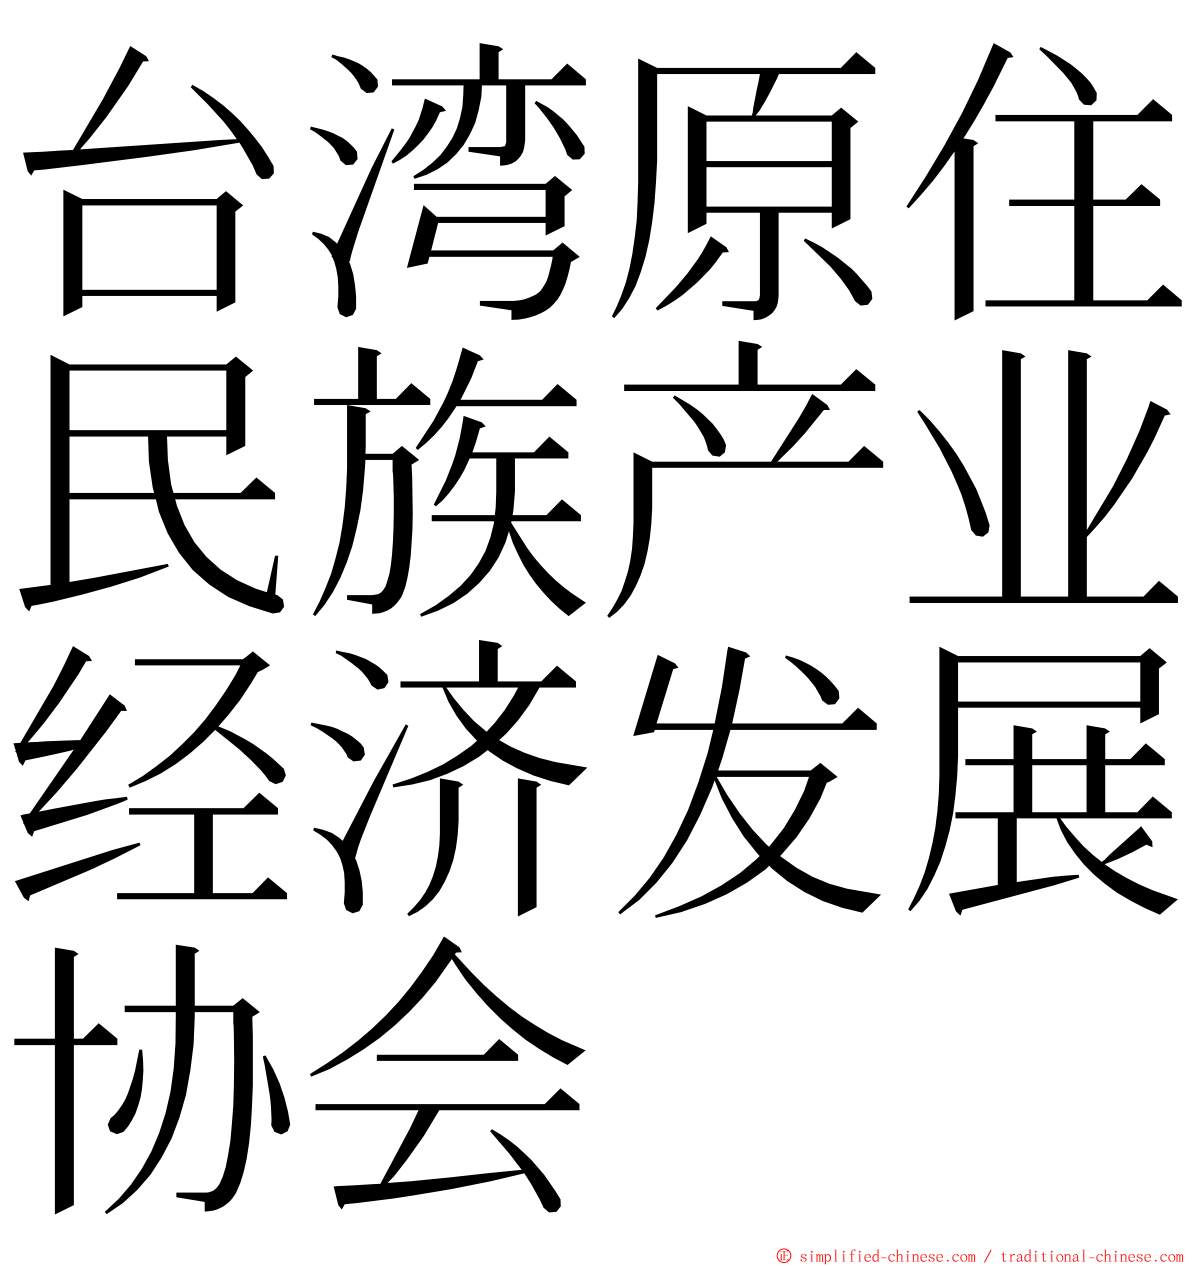 台湾原住民族产业经济发展协会 ming font